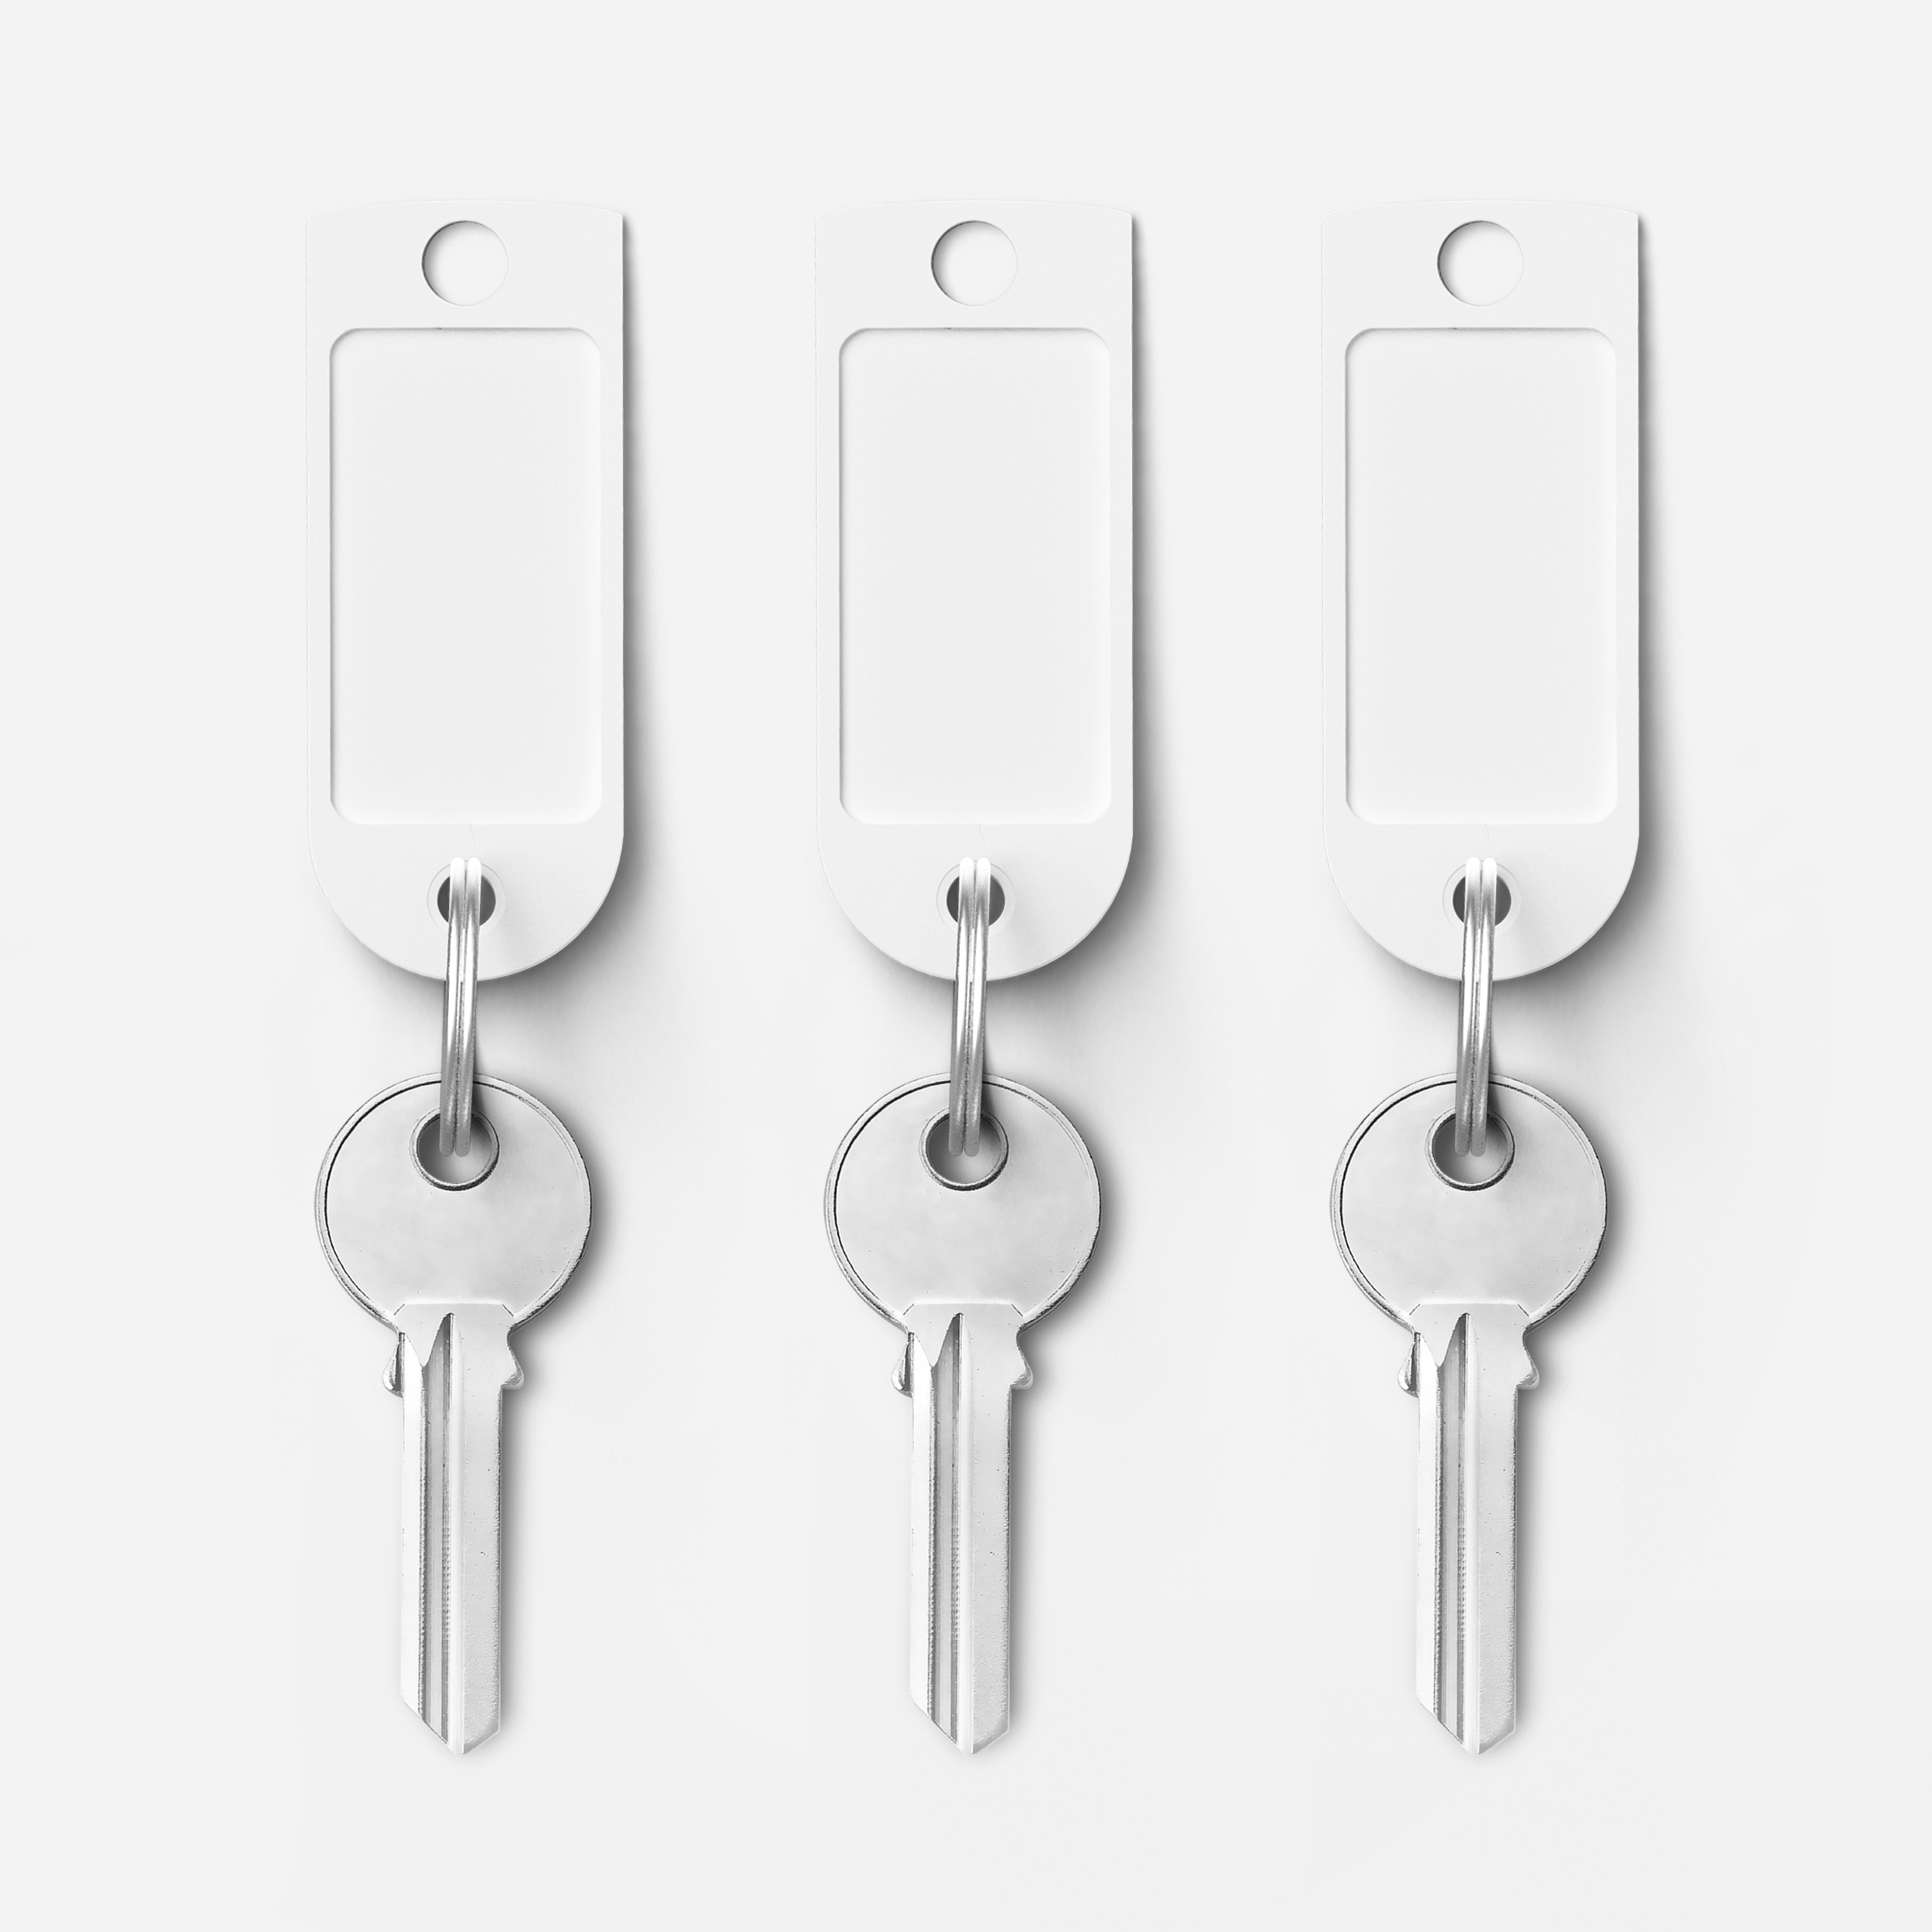 Key Tags Afrogfx Template Custom Key Chain (PSD), Key Tags